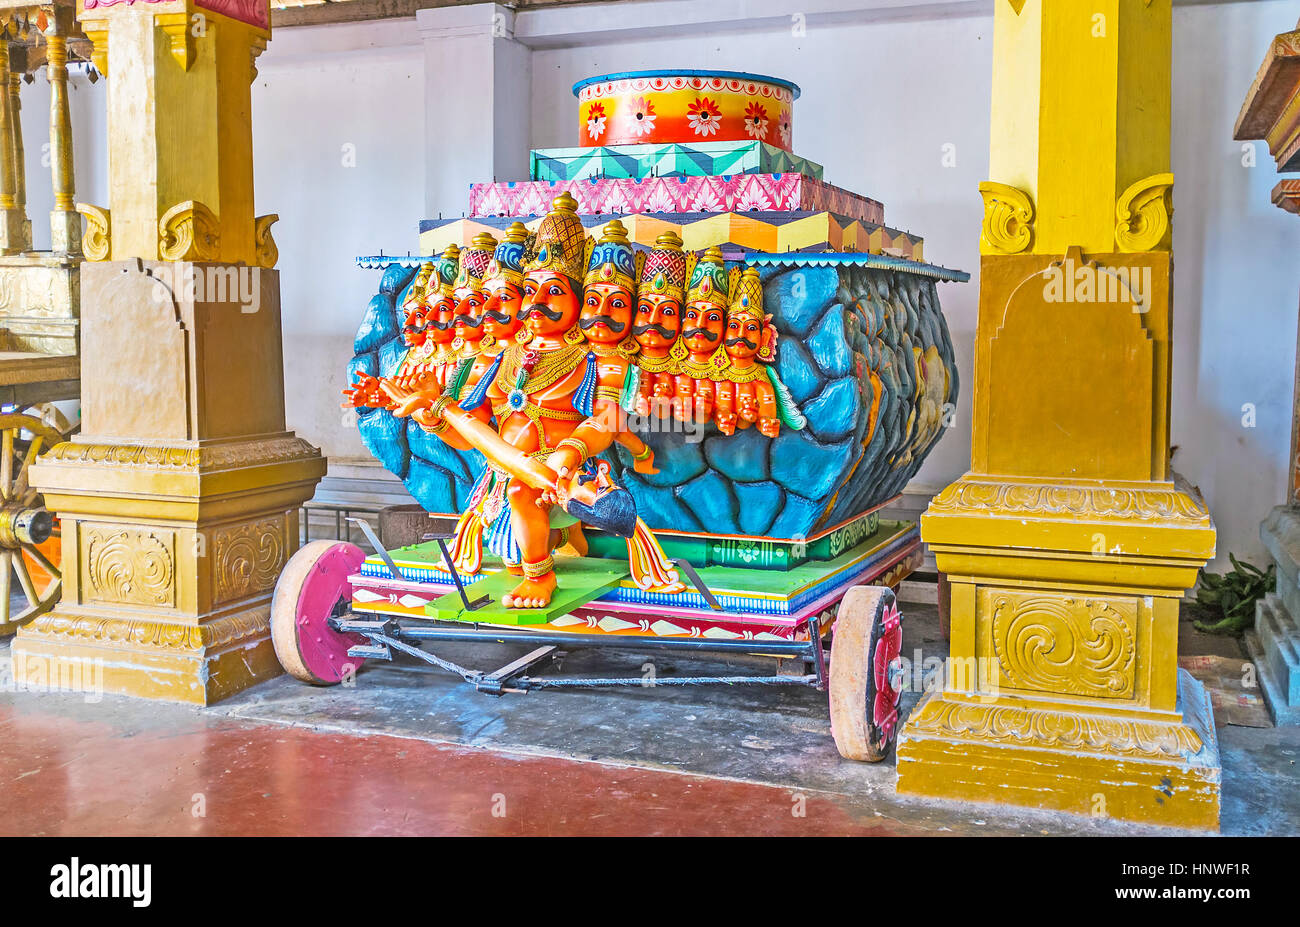 MUNNESWARAM, SRI LANKA - NOVEMBER 25, 2016: The festival cart in Munneswaram Kovil with the sculpture of nine-headed Ravana, holding tenth head in his Stock Photo